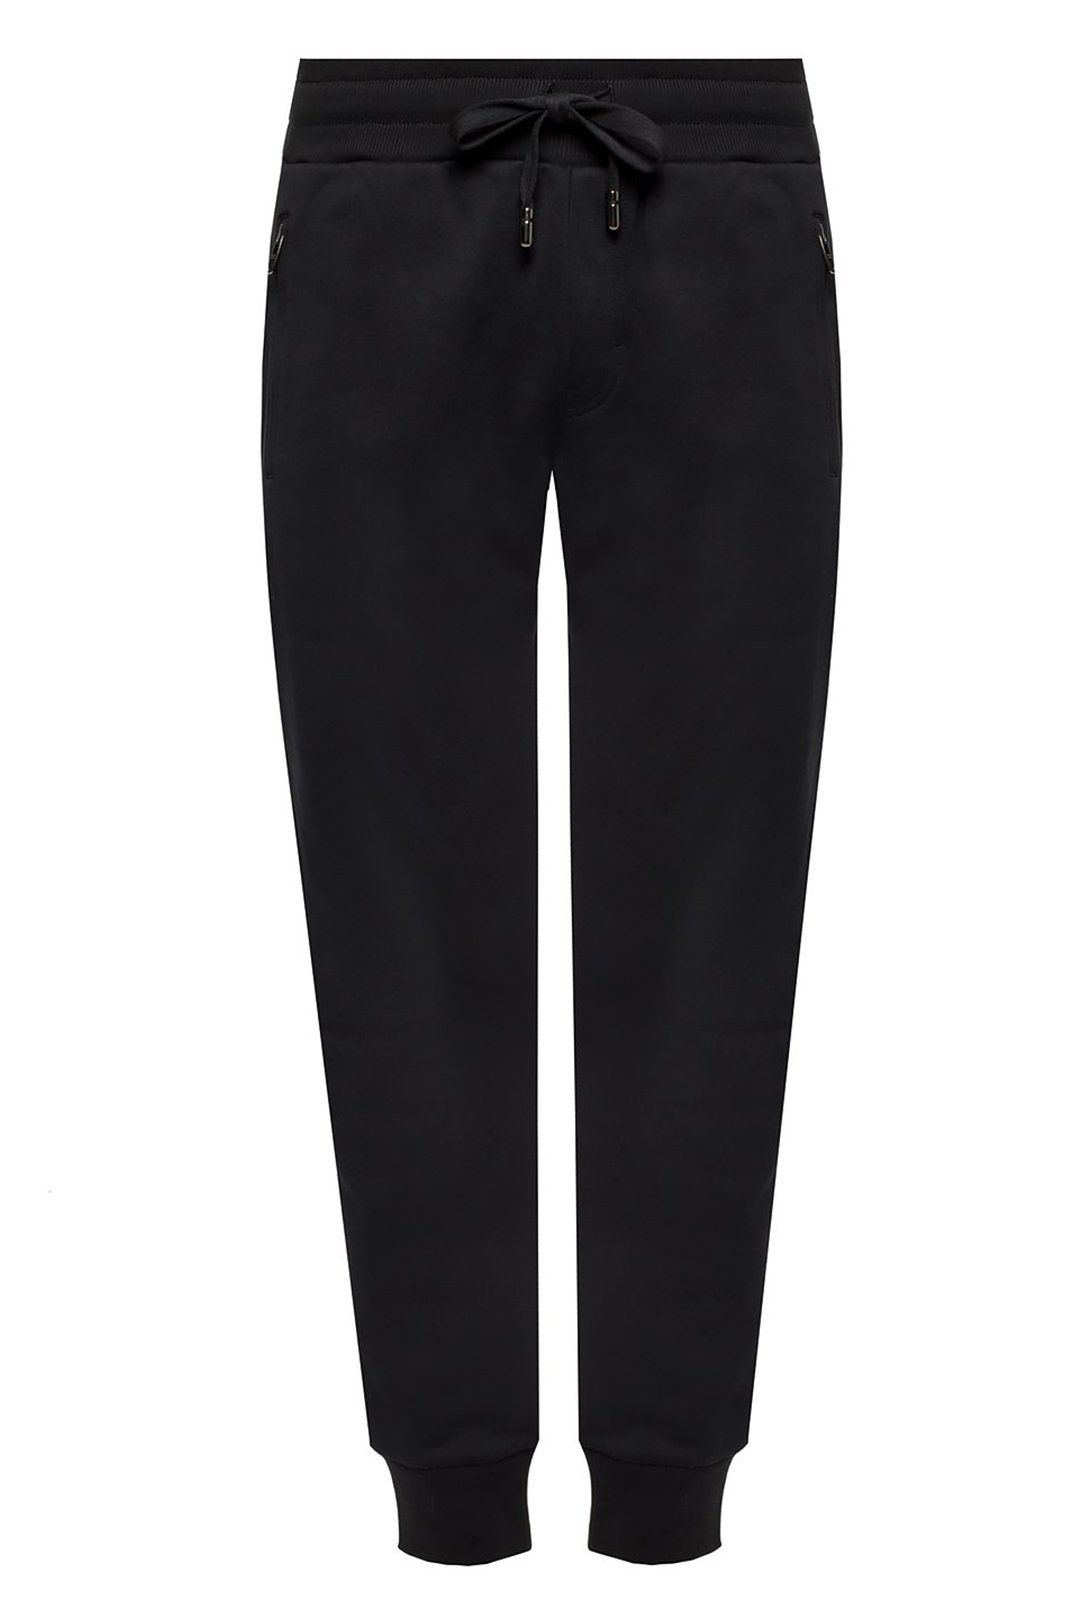 Pantalons sport/streetwear  Dolce&Gabbana GYUSEZ FU7DU N0000 BLACK